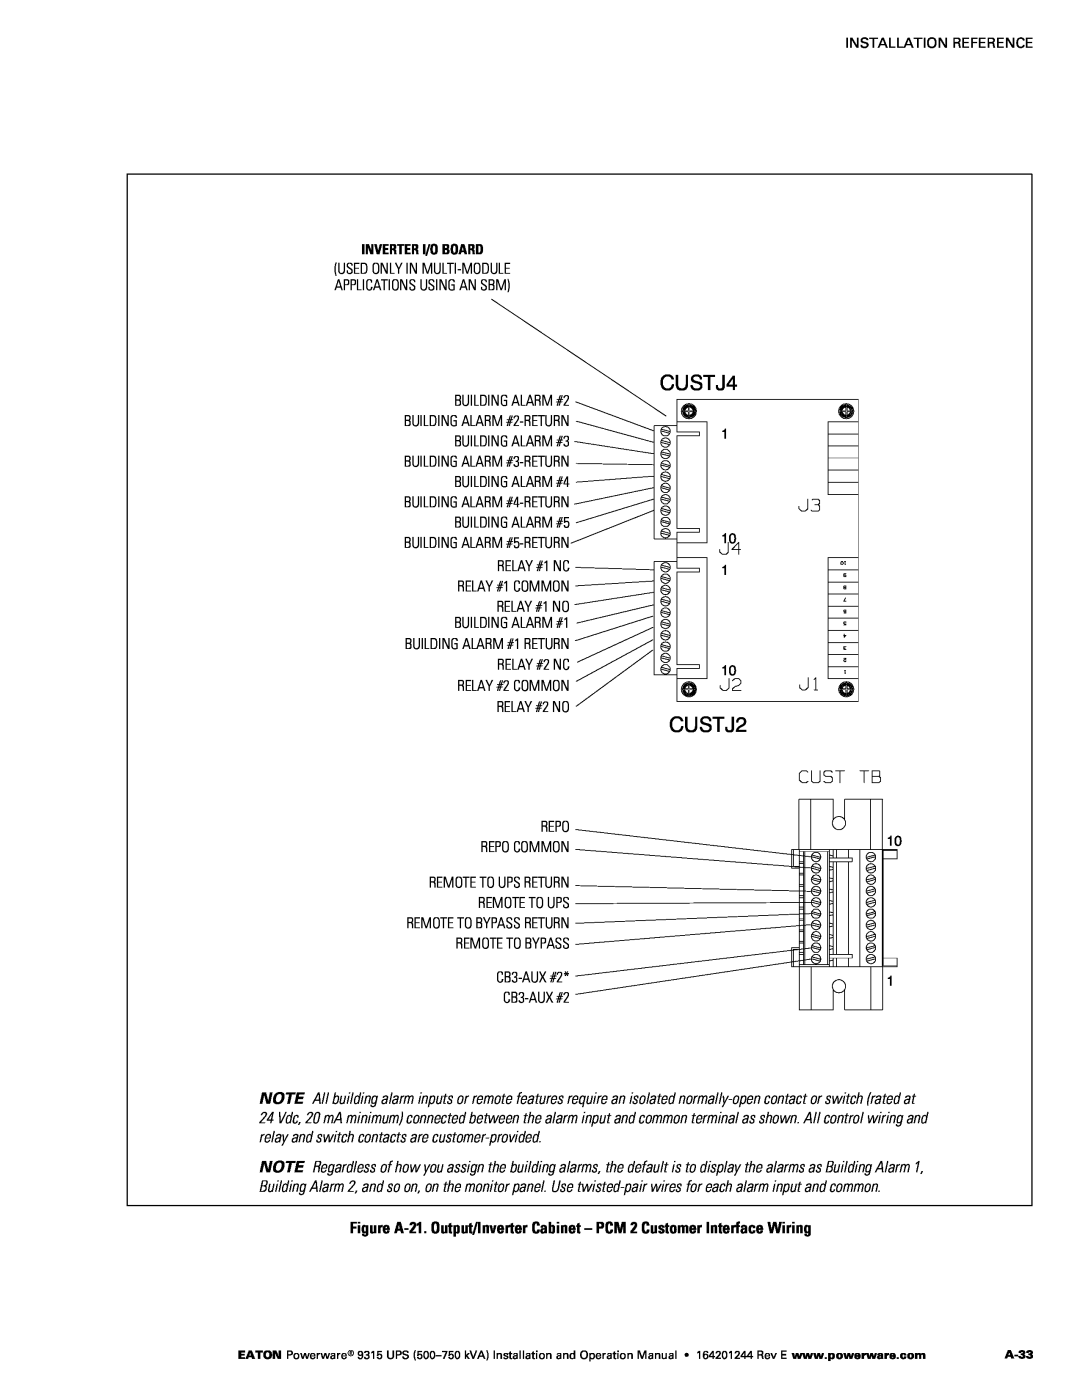 Powerware Powerware 9315 operation manual CUSTJ4, CUSTJ2, Inverter I/O Board 